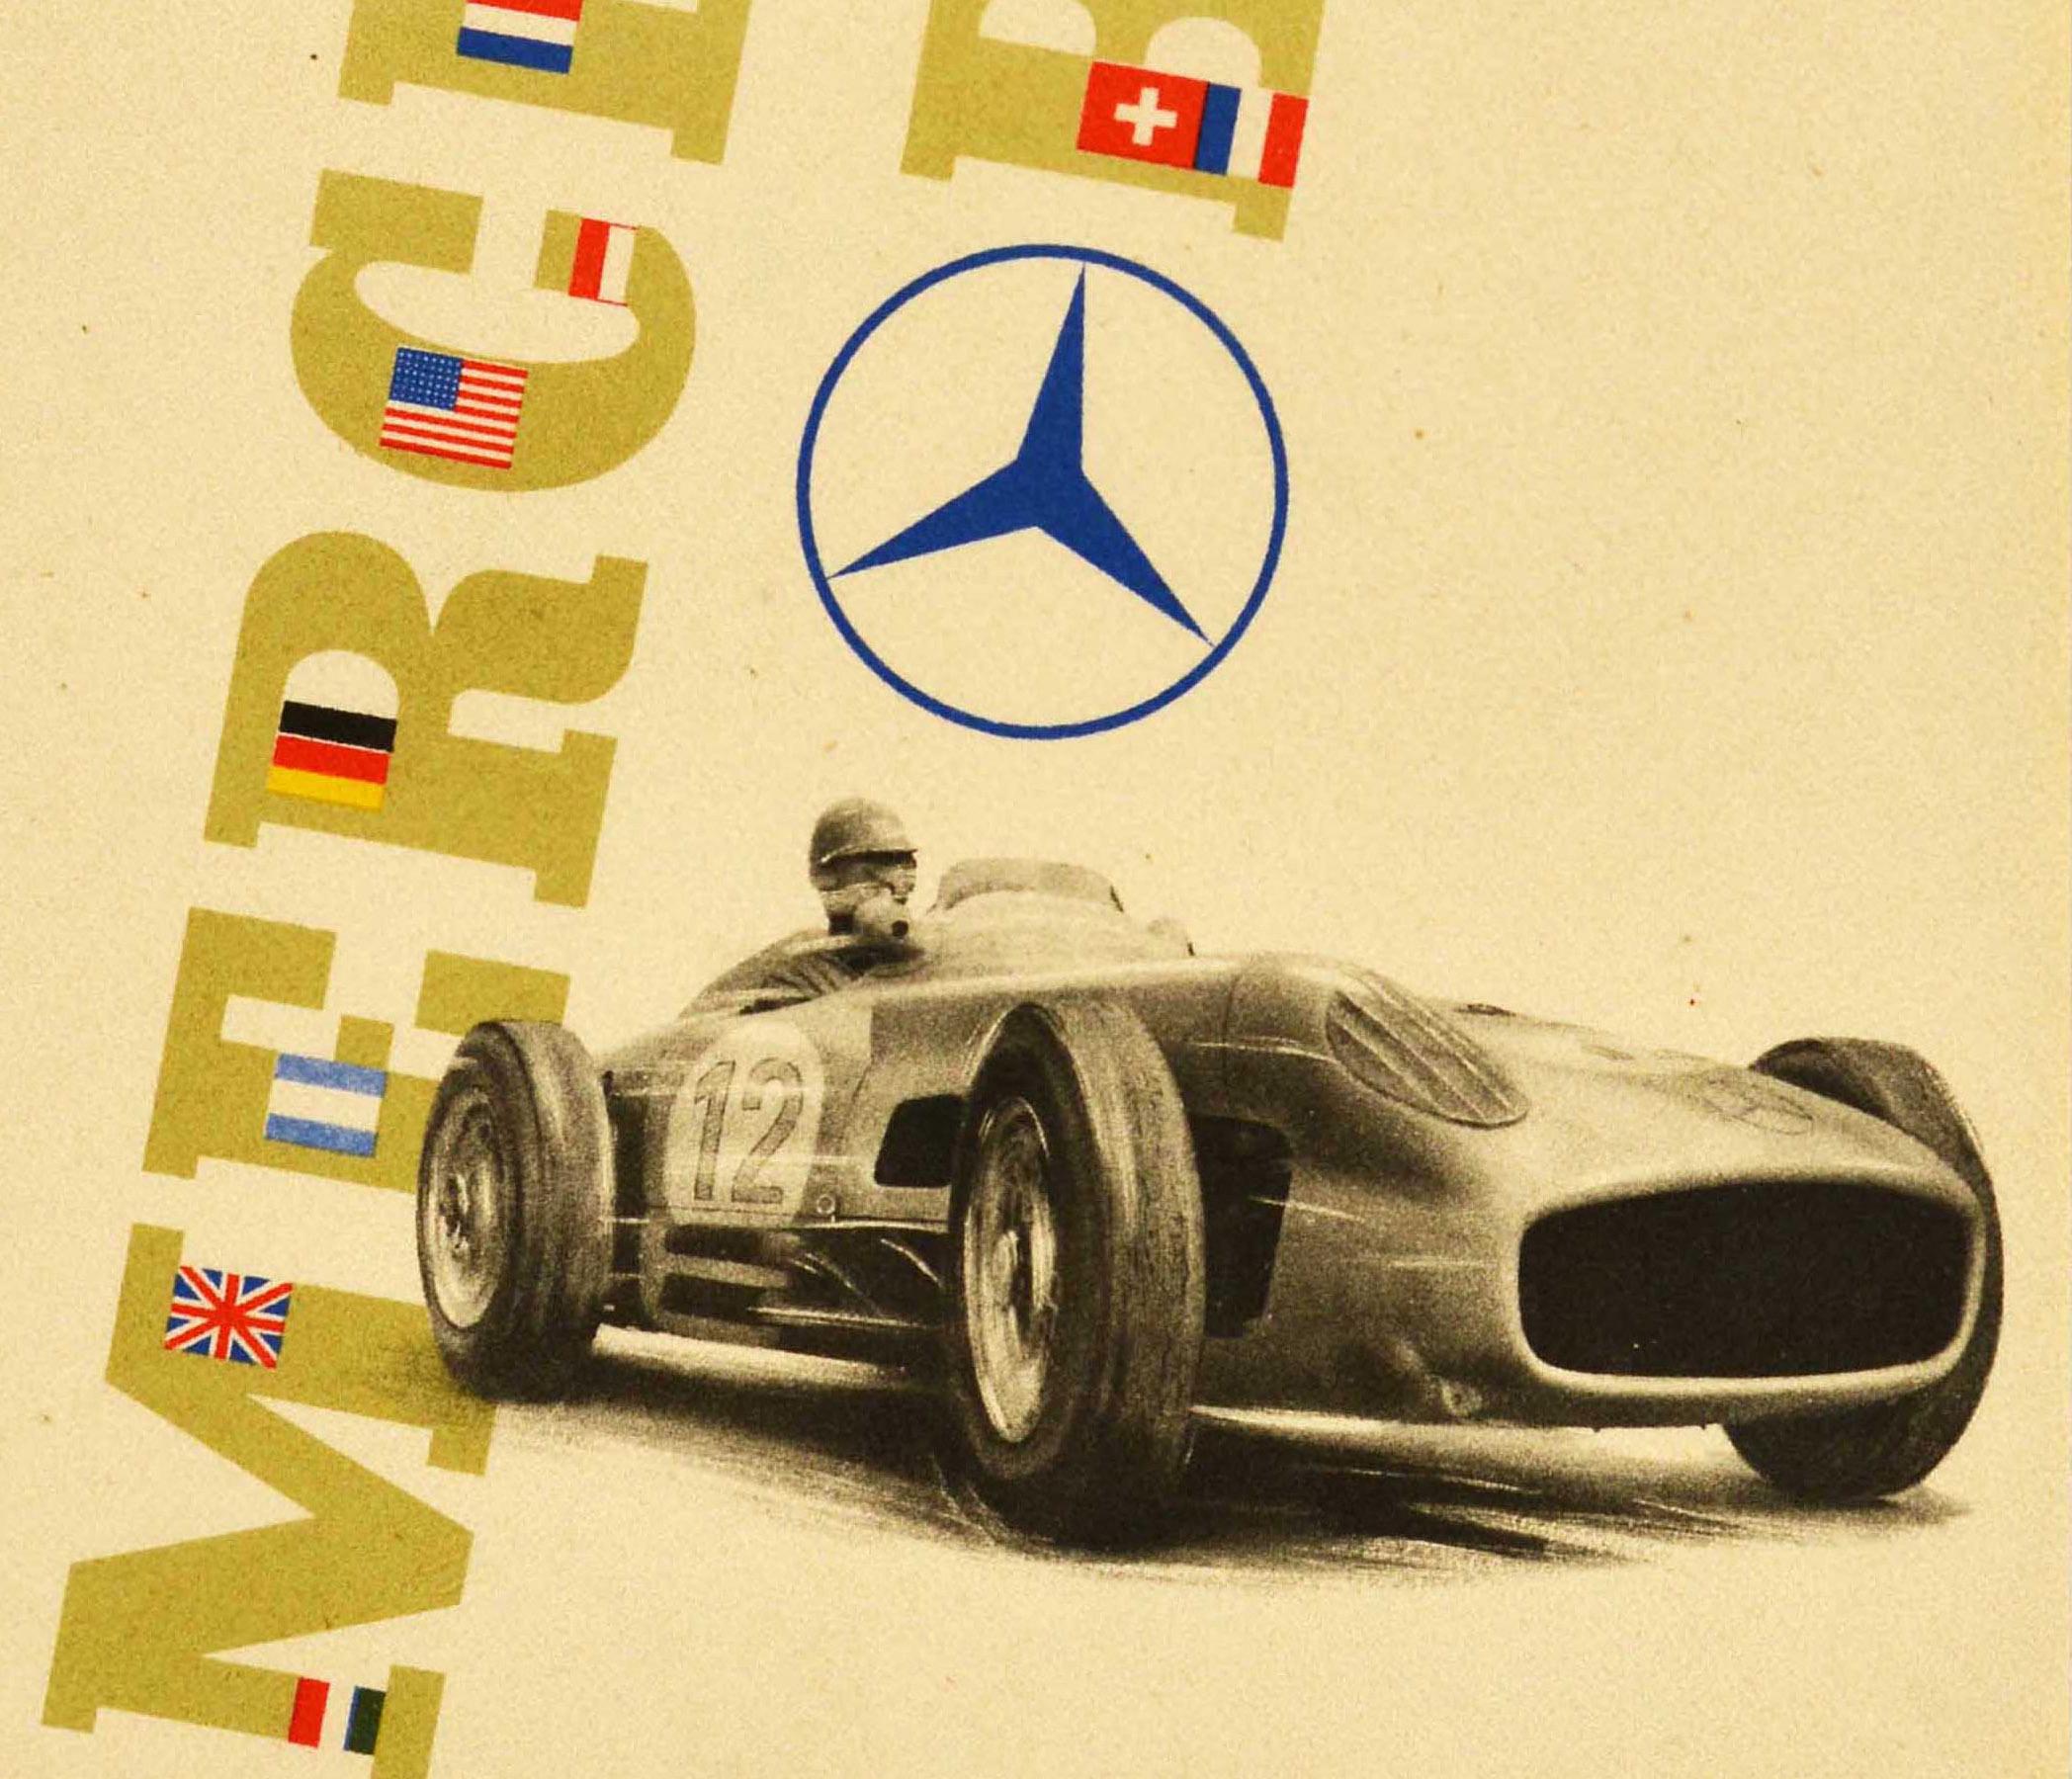 Affiche originale d'époque annonçant la quadruple victoire de Mercedes Benz au Grand Prix d'Angleterre en 1955 - Vierfacher Mercedes-Benz-Sieg im Grossen Preis von England 1955 1. Stirling Moss 2. Weltmeister / Champion du monde Juan Manuel Fangio